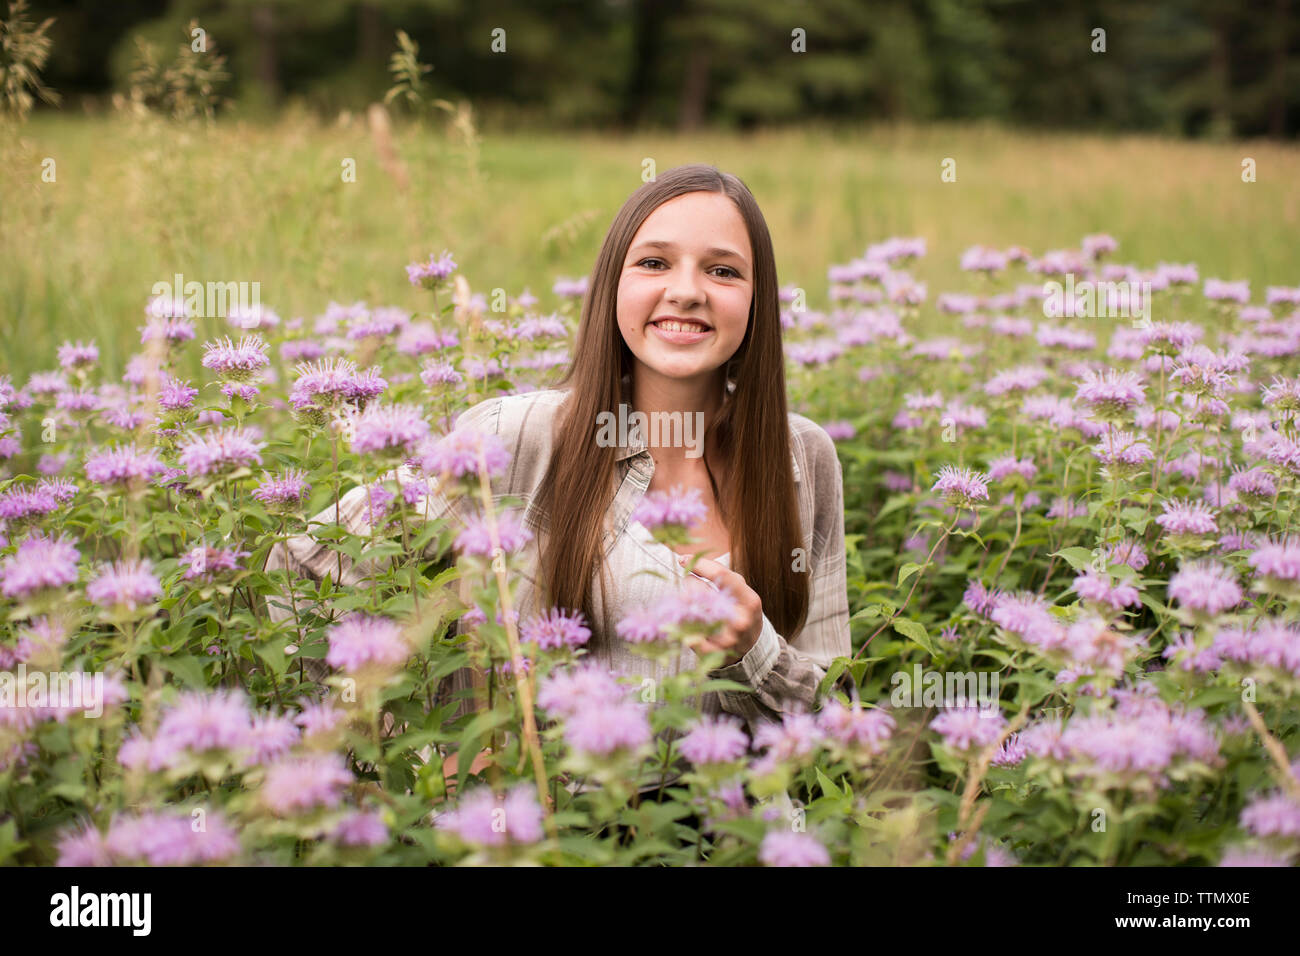 Au courant de l'appareil photo, Smiling, fille de l'adolescence se trouve dans un champ de fleurs violettes Banque D'Images